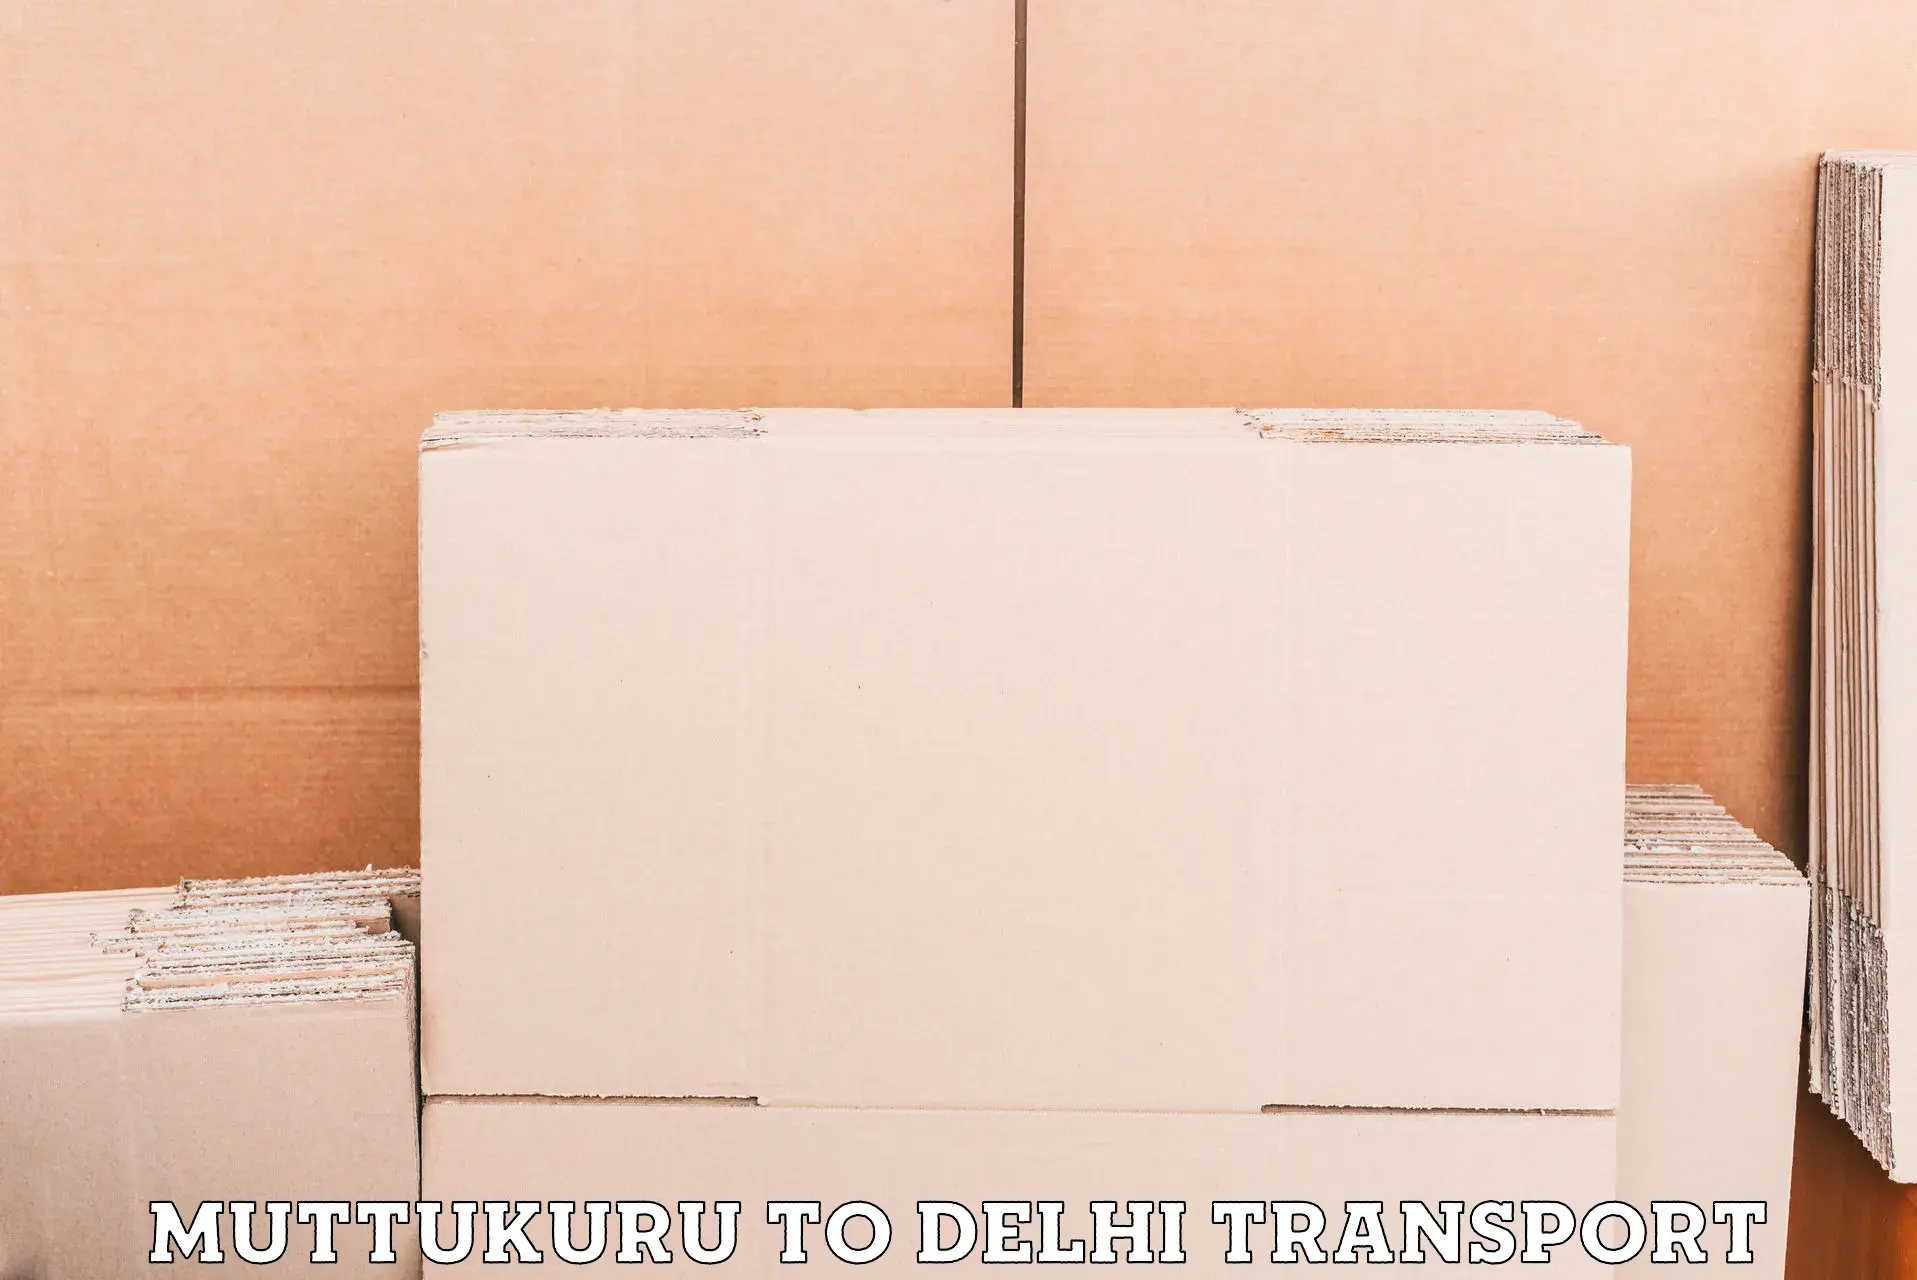 Door to door transport services in Muttukuru to University of Delhi